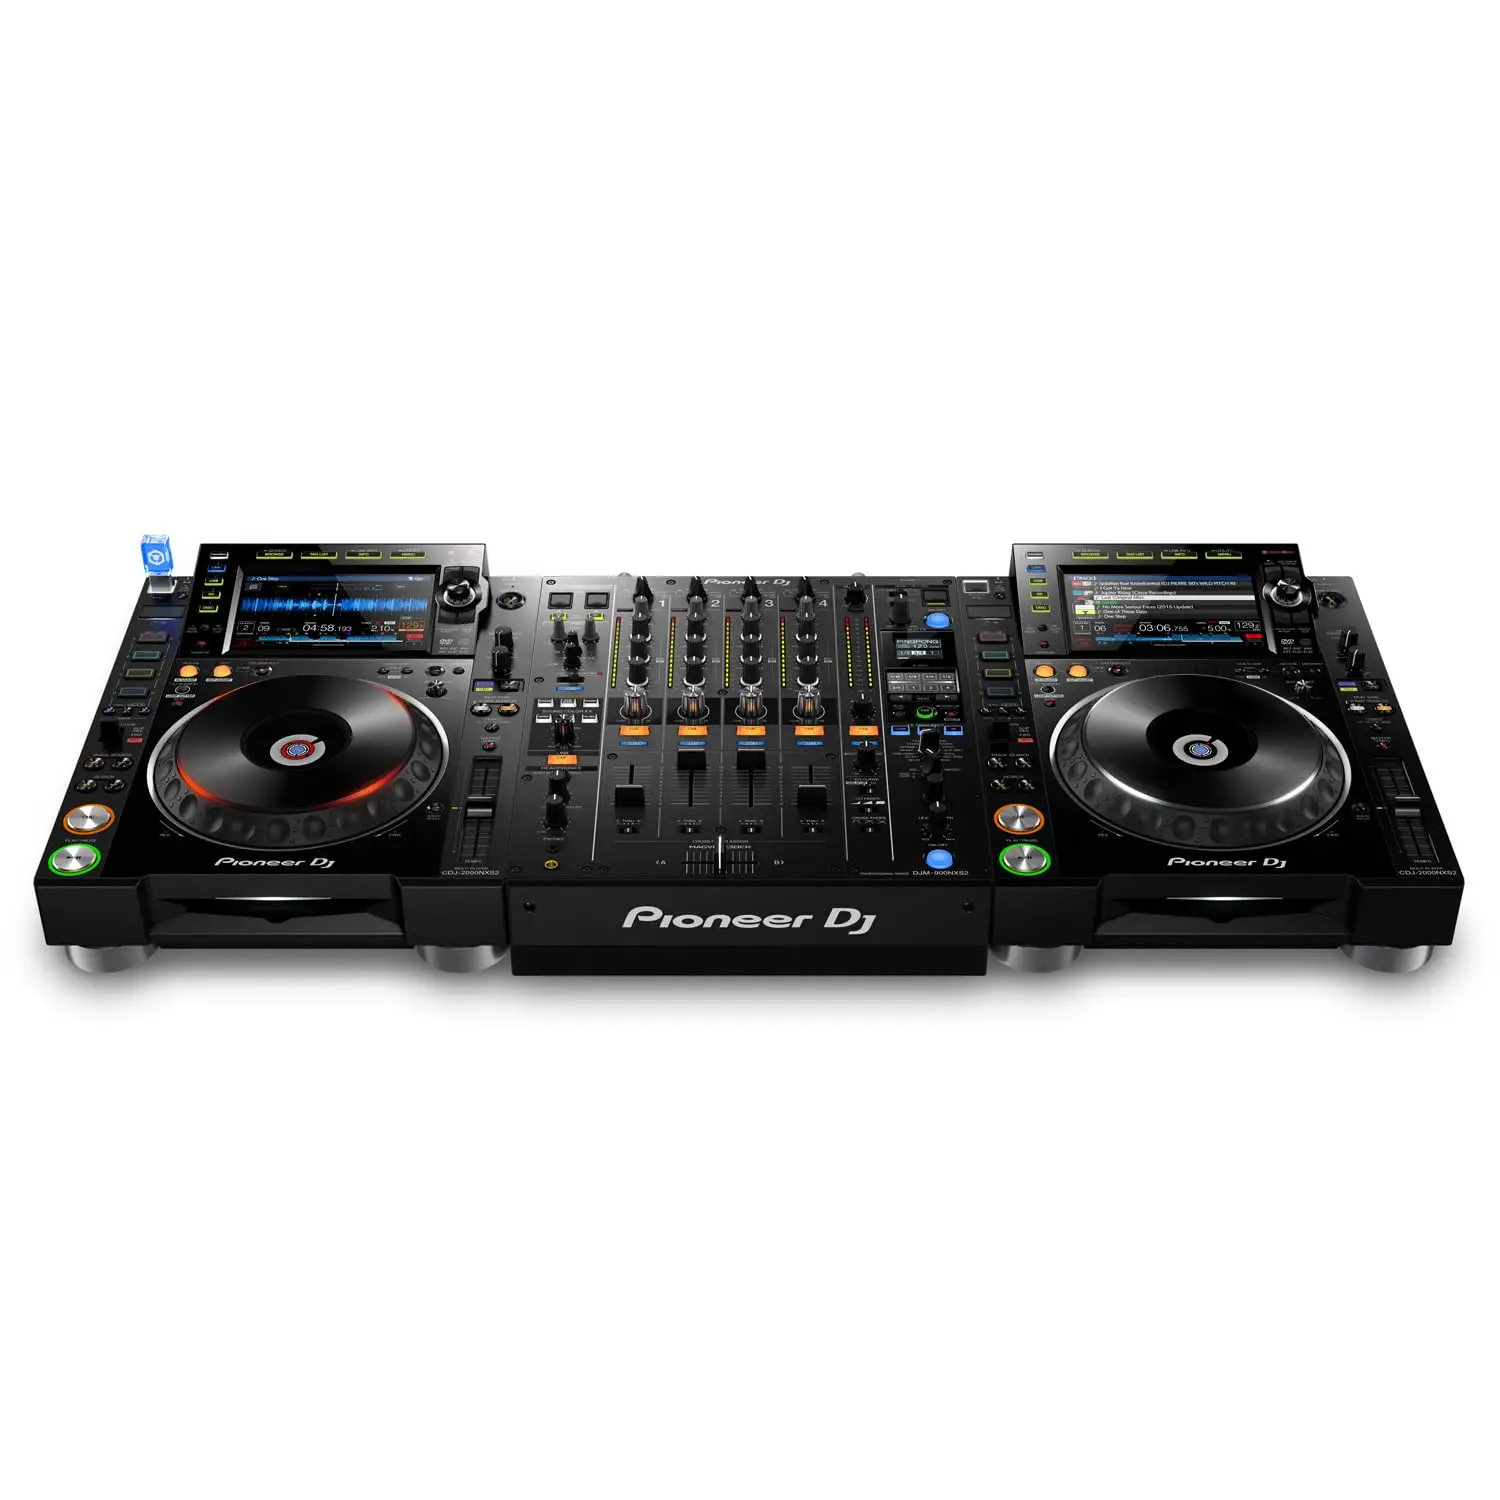 

Промо-продажа для нового DJM-900NXS2 профессионального DJ микшера